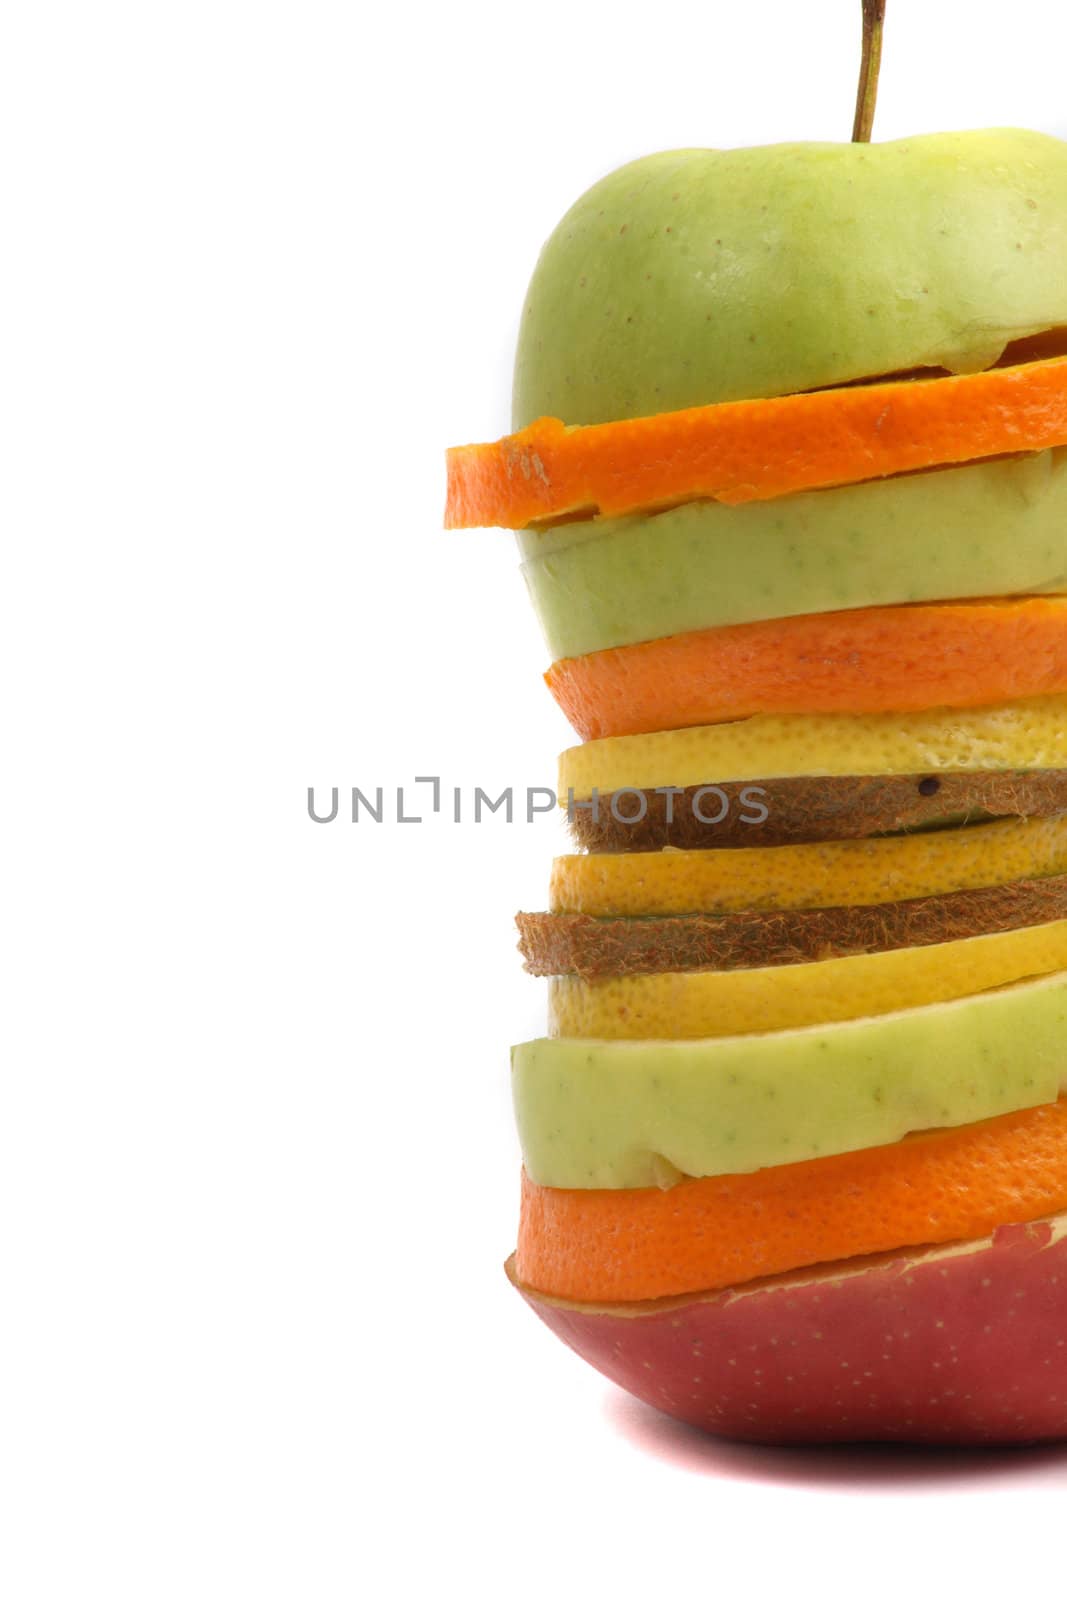 fruits slices from apple, orange, kiwi isolated on the white background